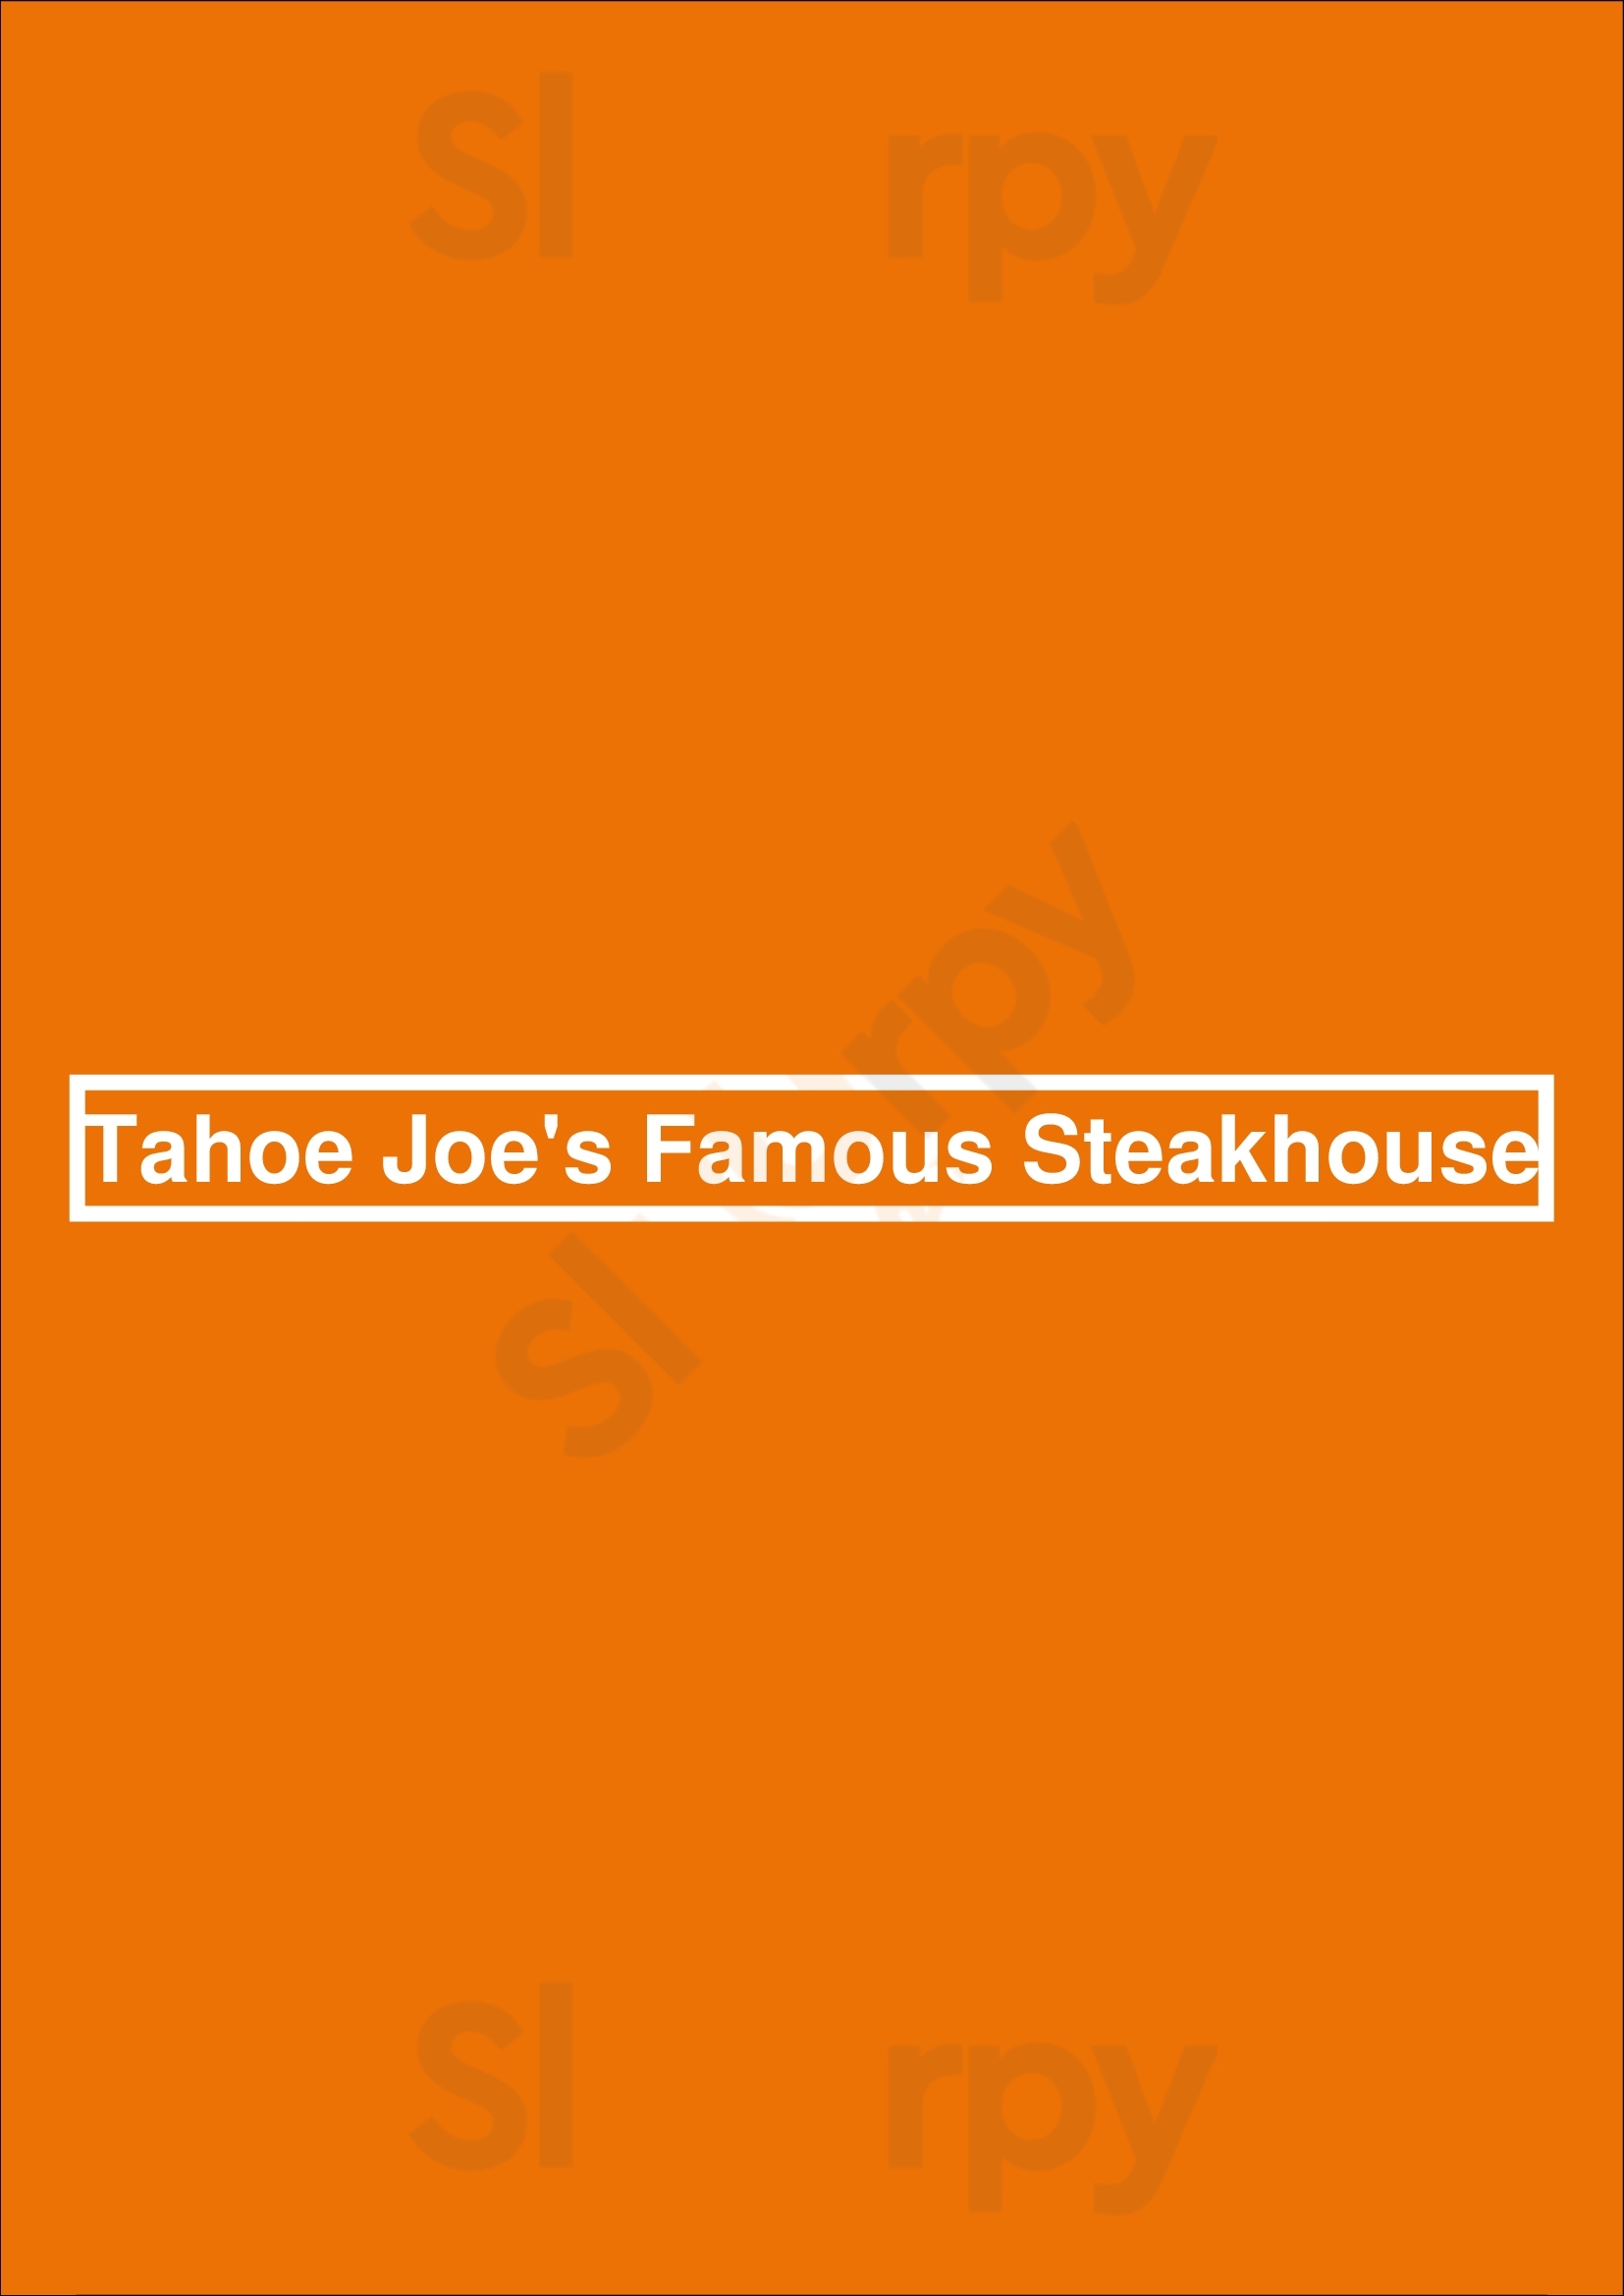 Tahoe Joe's Famous Steakhouse Fresno Menu - 1